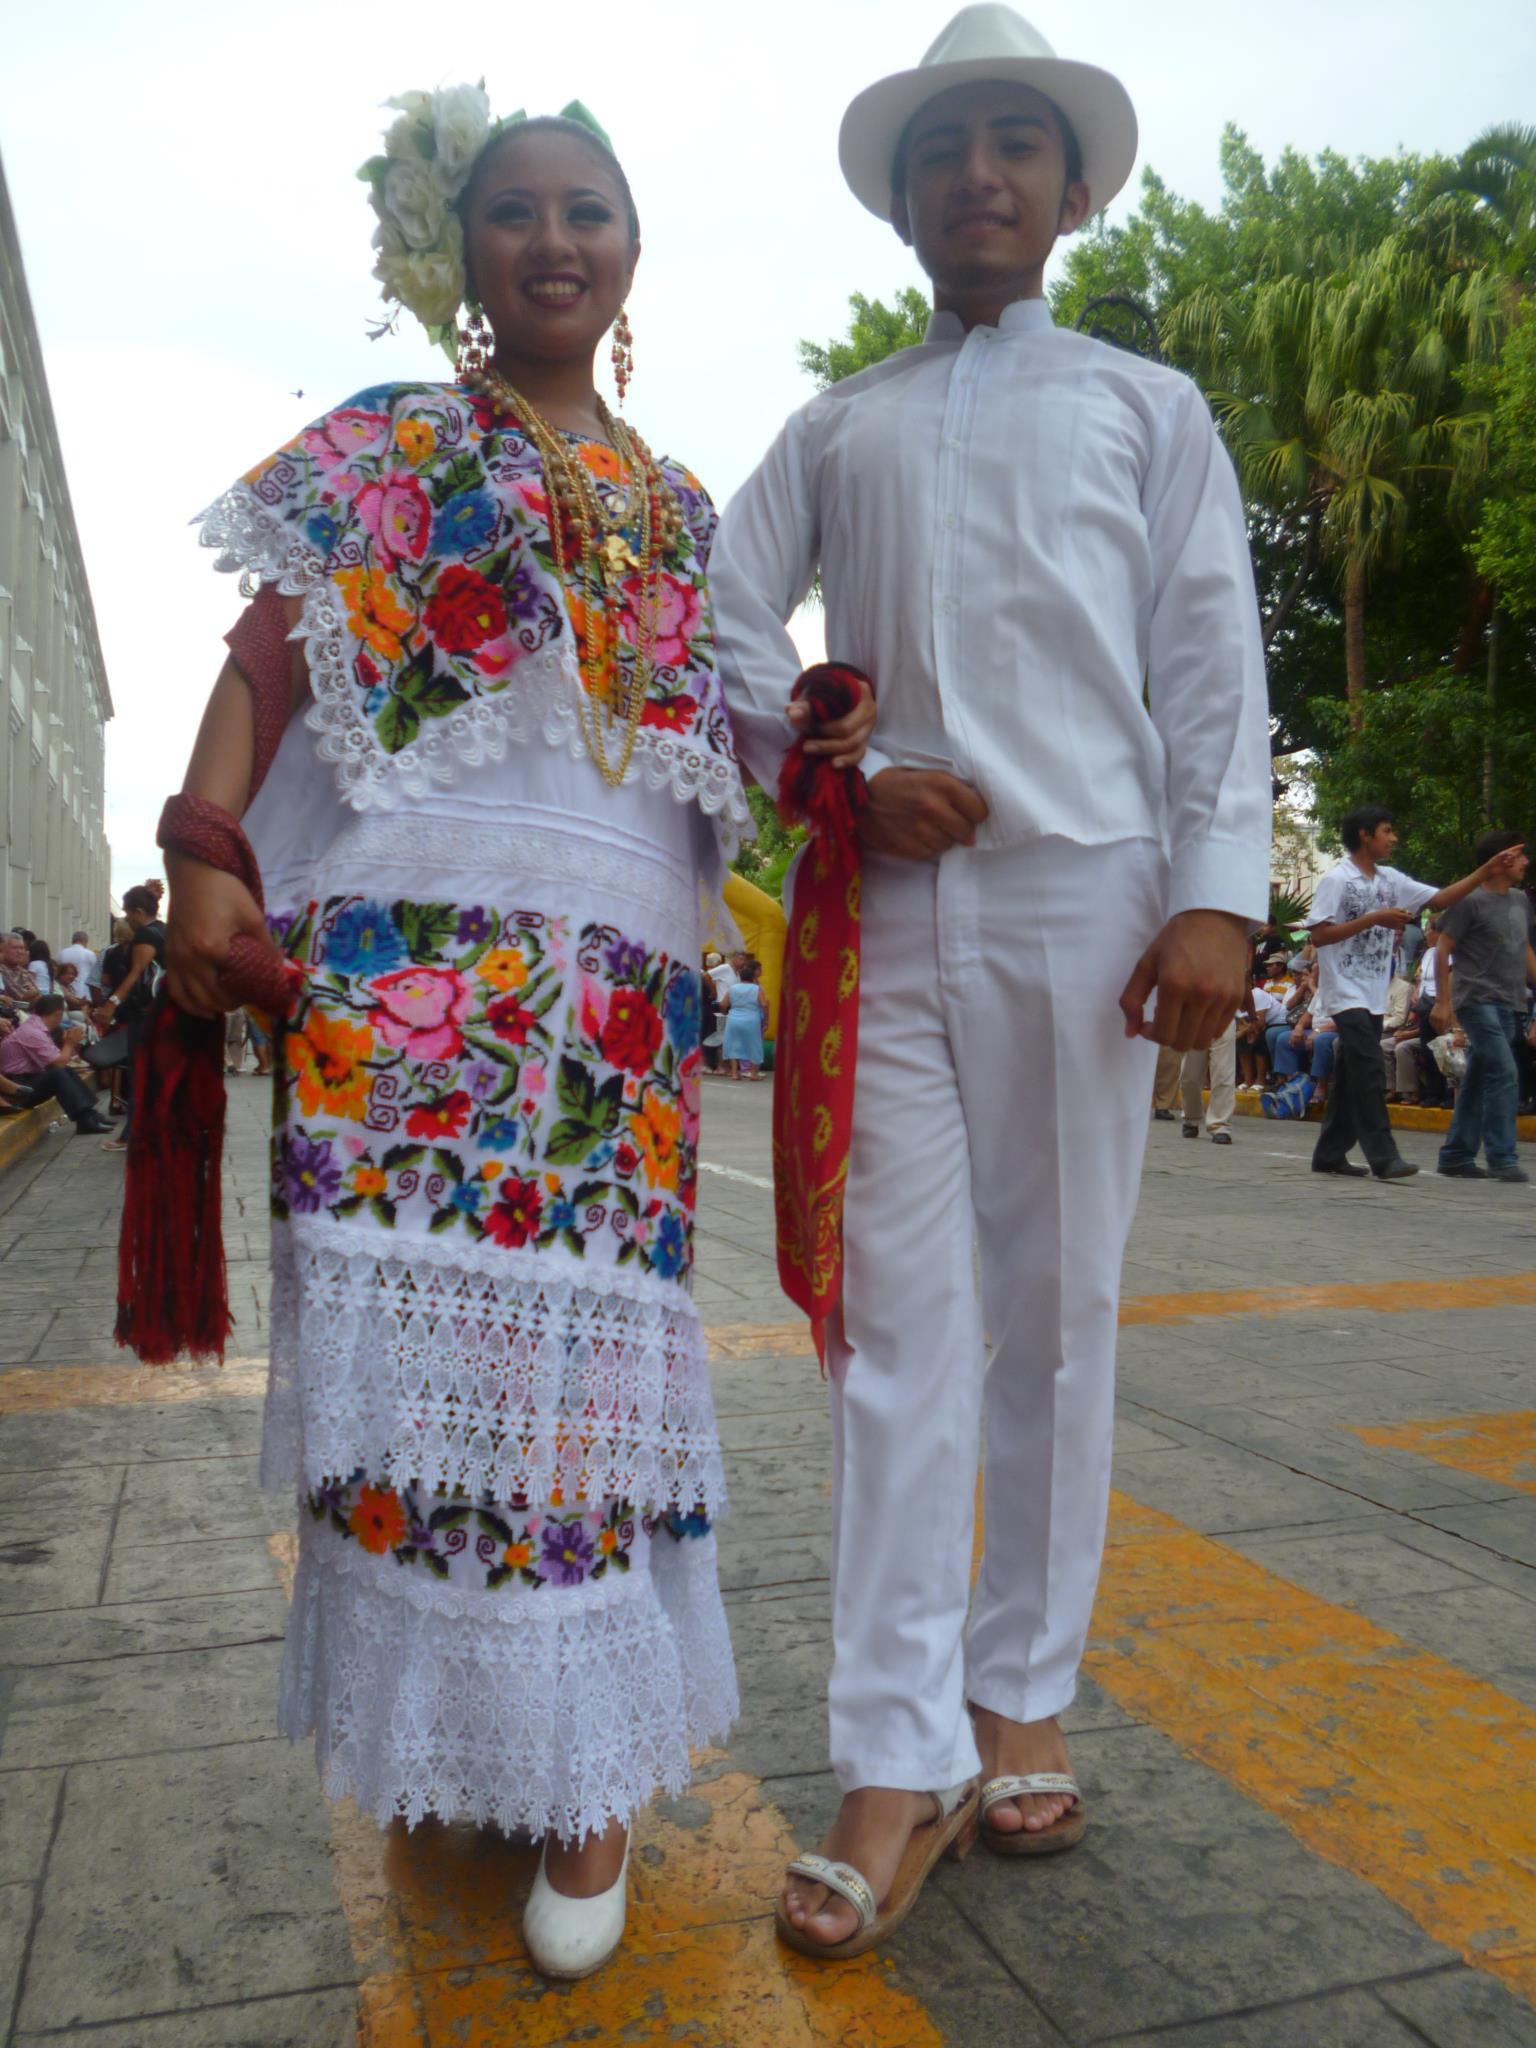 Vestimenta típica de Yucatán